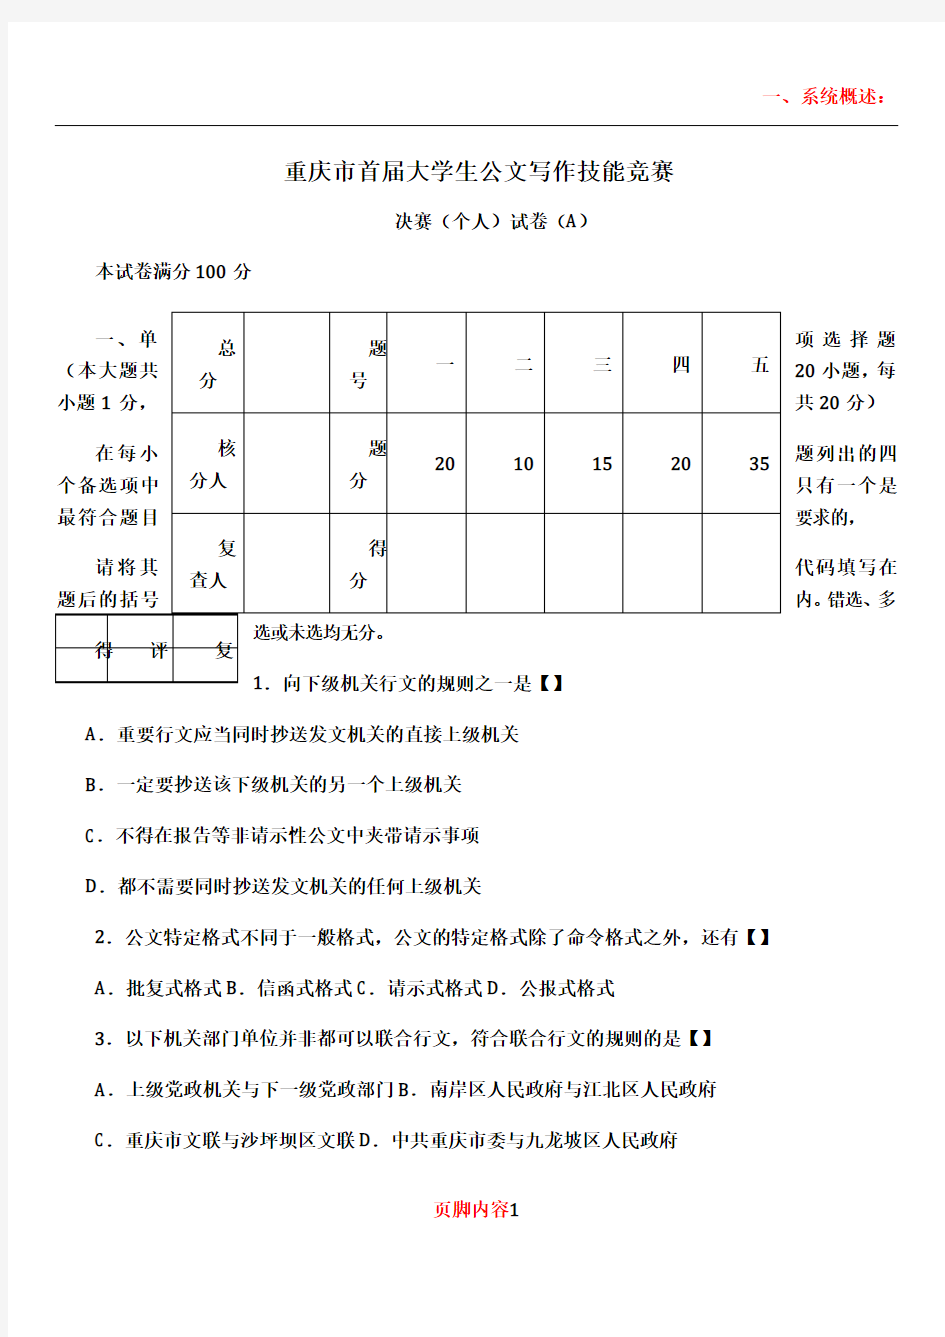 (A卷)重庆市大学生公文写作技能竞赛决赛(个人)试题